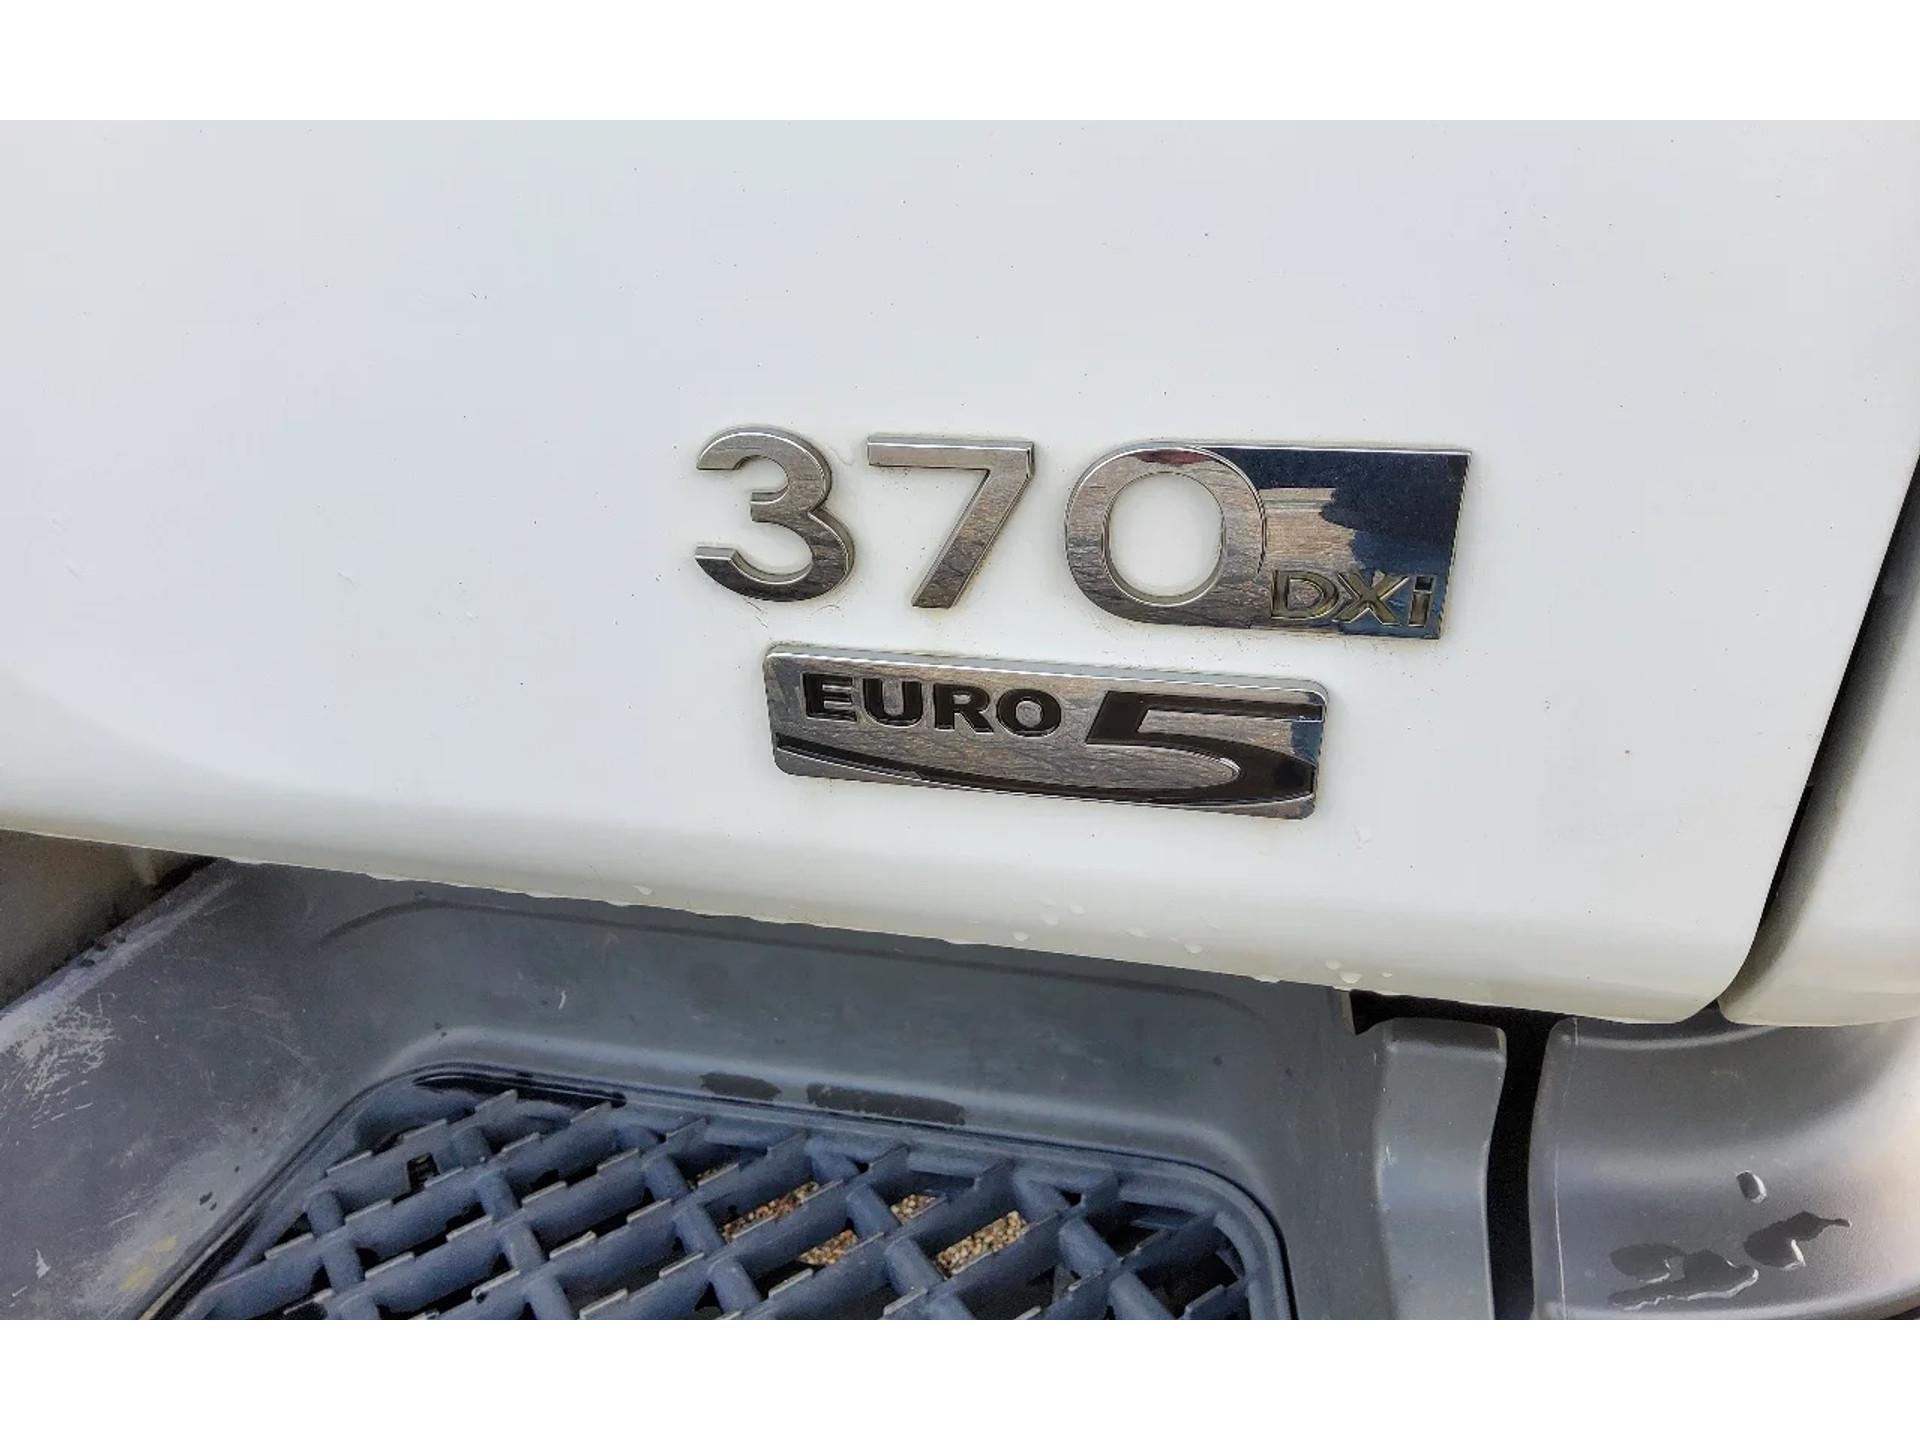 Foto 20 van Renault Premium 370 26 TON 6x2 D EL GESTUURD - EURO 5 - KIPPER + ATLAS TEREX KRAAN + RADIO - BV-XD-09